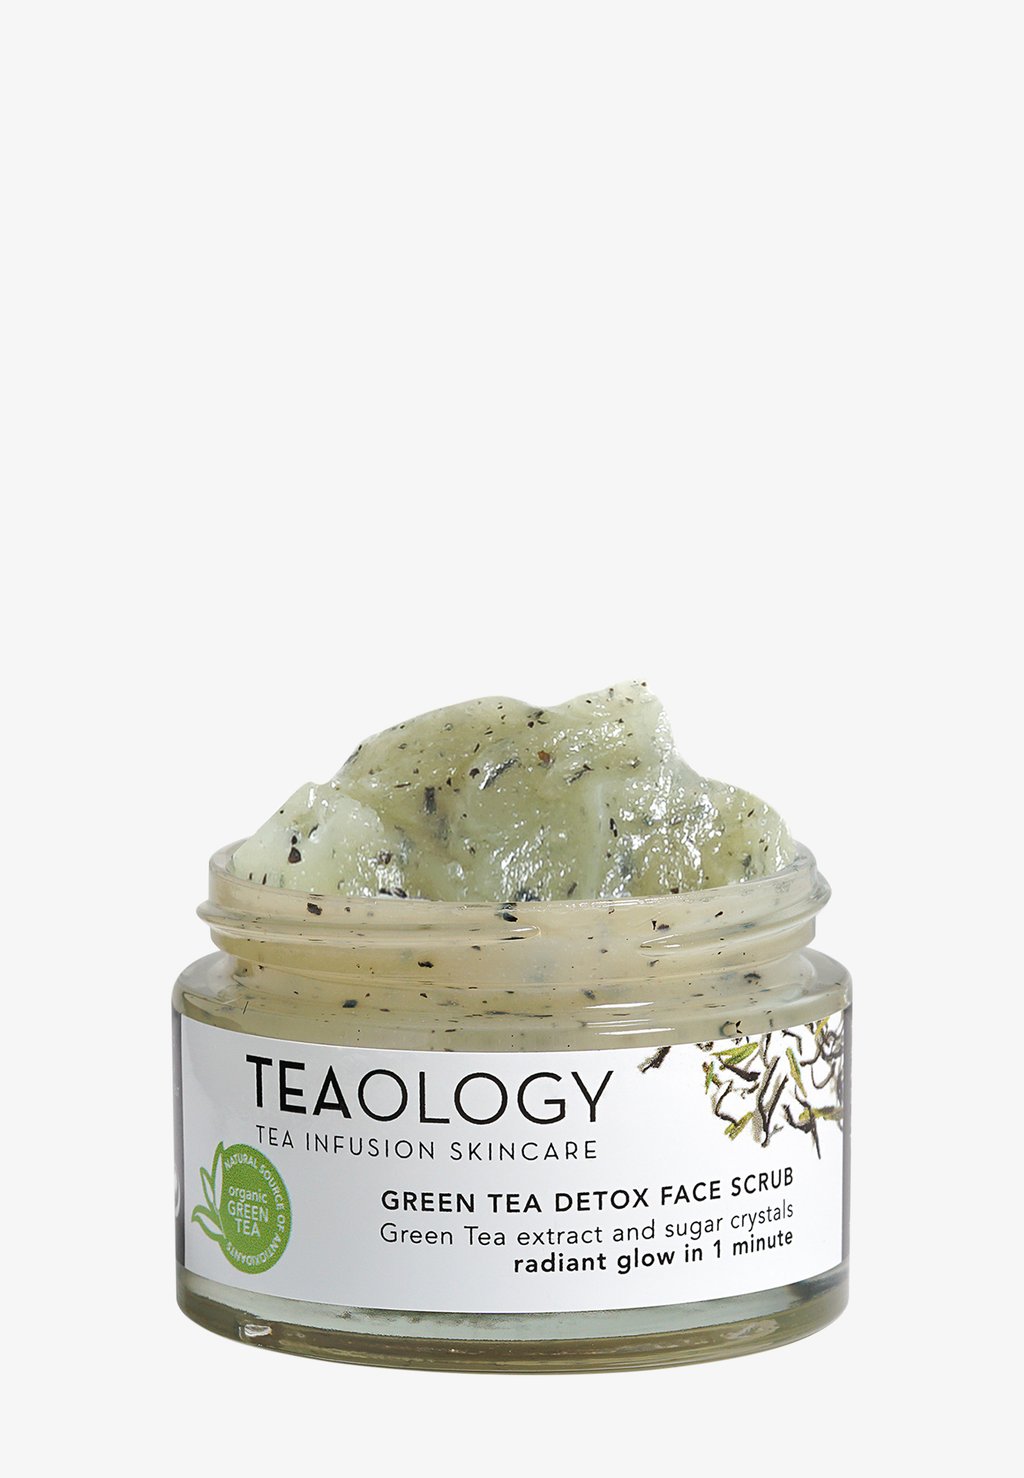 Скраб и пилинг для лица Green Tea Detox Face Scrub Teaology